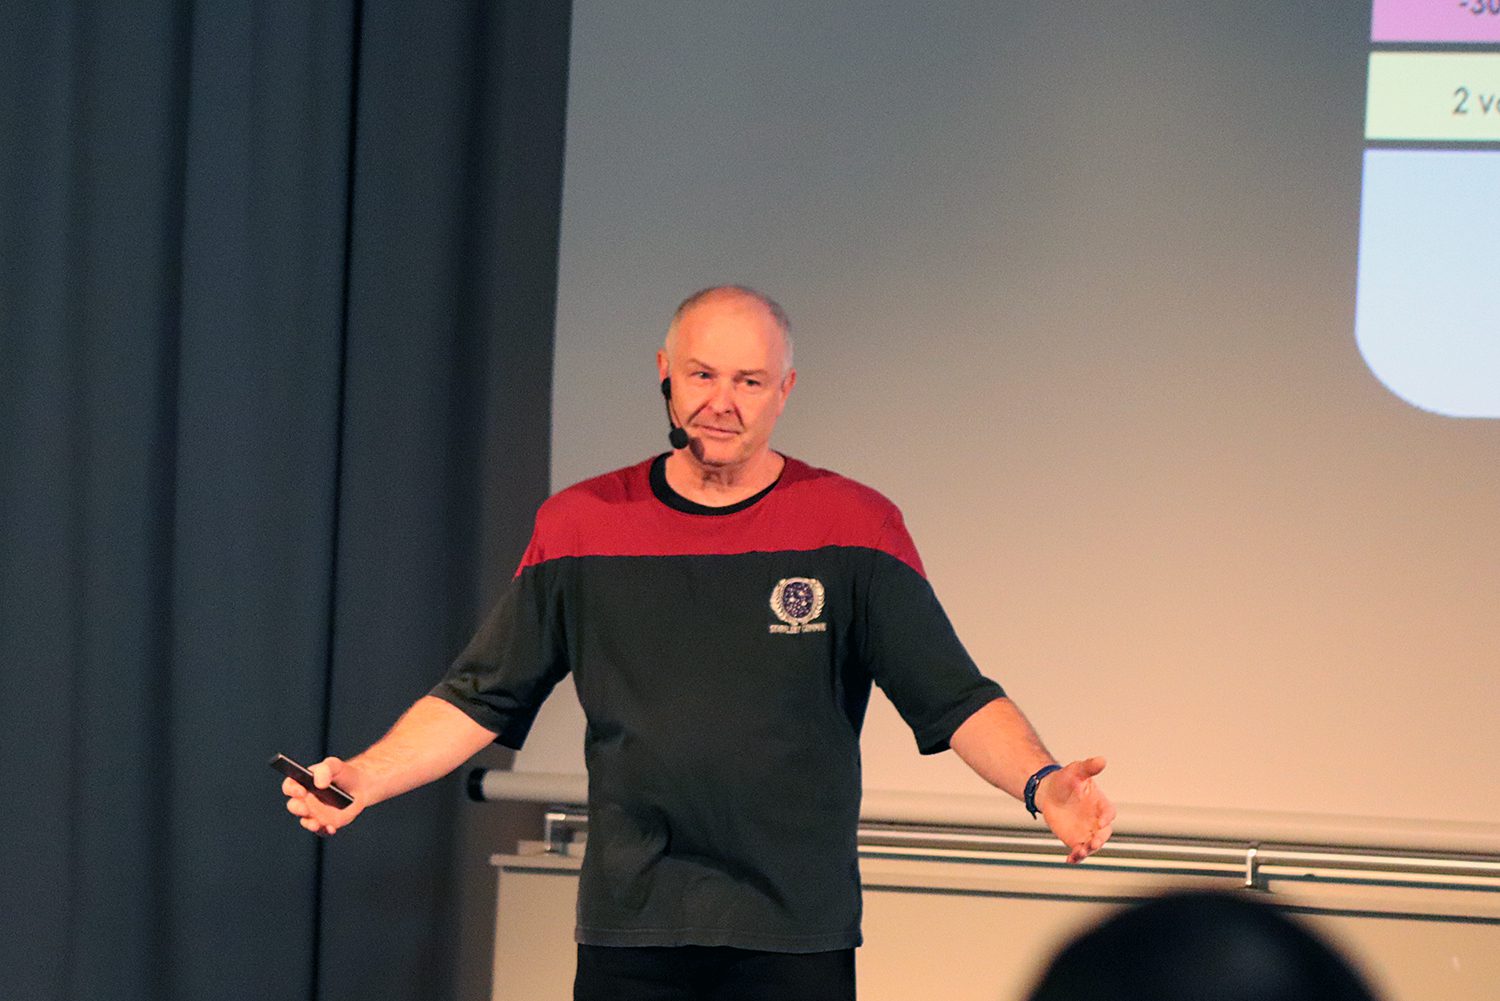 Hubert Zitt, der Referent der Star Trek-Vorlesung. Foto: Schnell